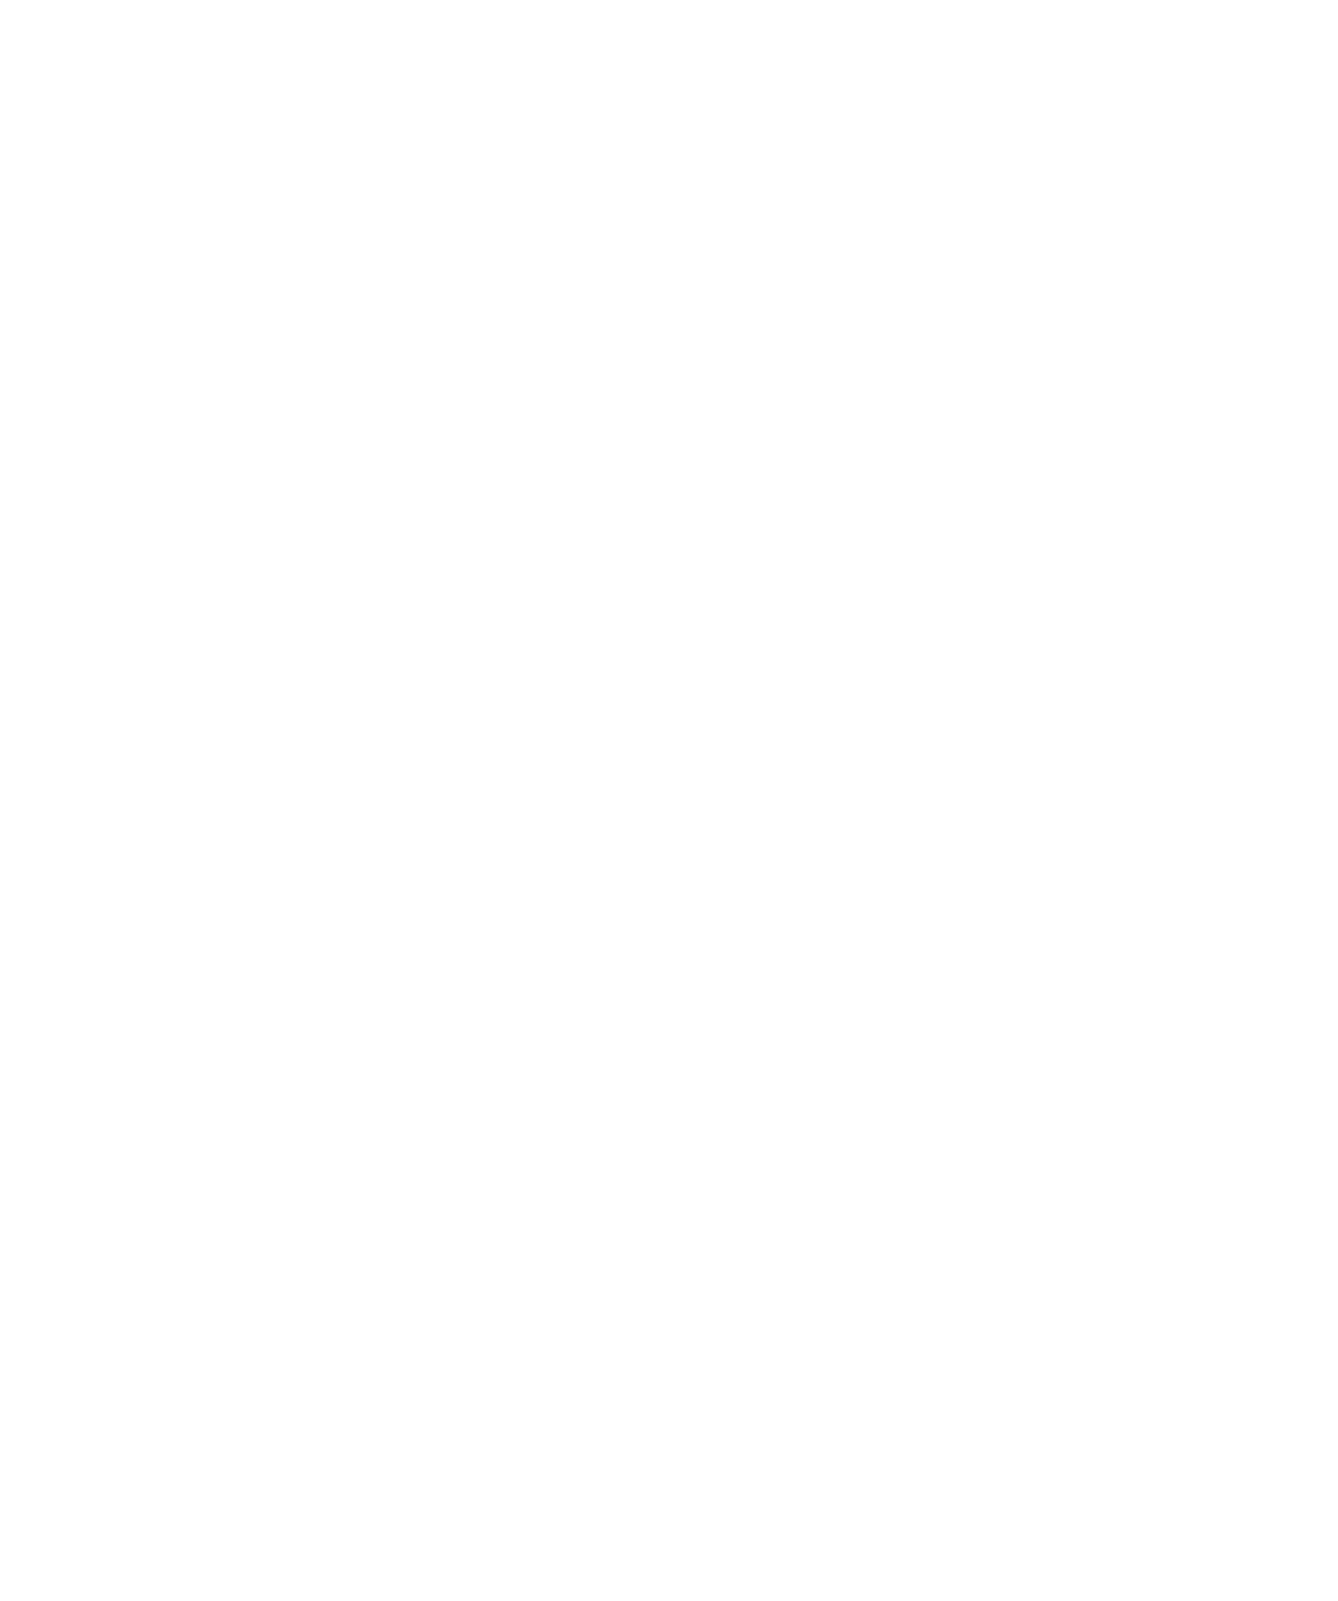 Centrais Electricas Brasileiras logo pour fonds sombres (PNG transparent)